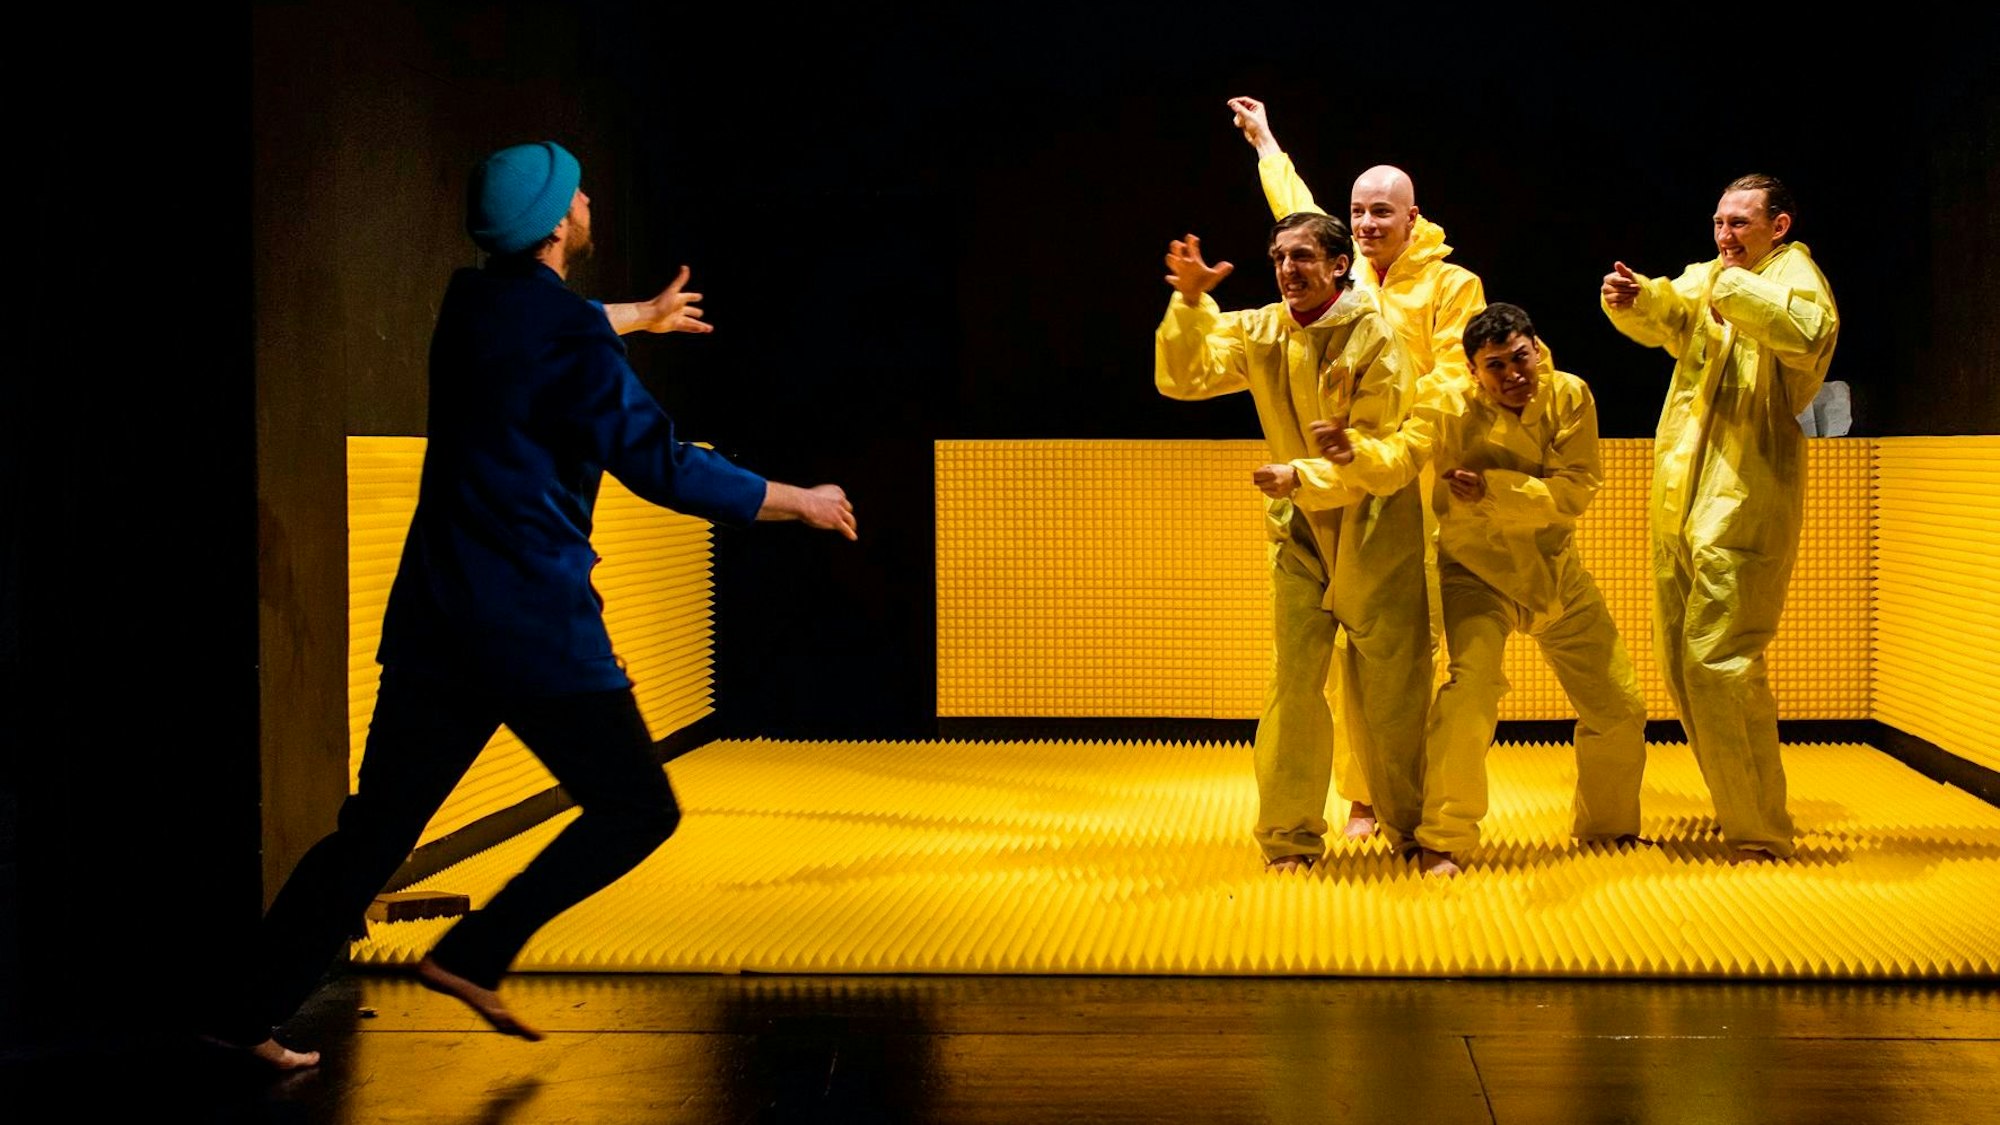 Vier Schauspieler in gelben Anzügen stehen auf einer gelben Gummimatte. Ein Schauspieler in Blau läuft auf sie zu.